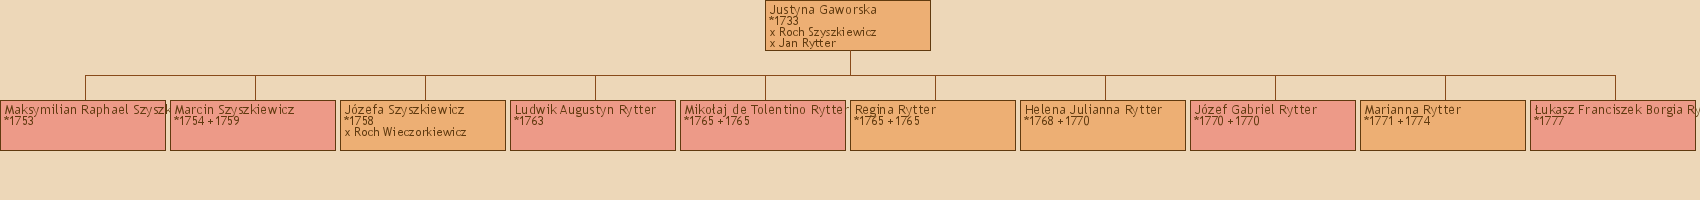 Drzewo genealogiczne - Justyna Gaworska